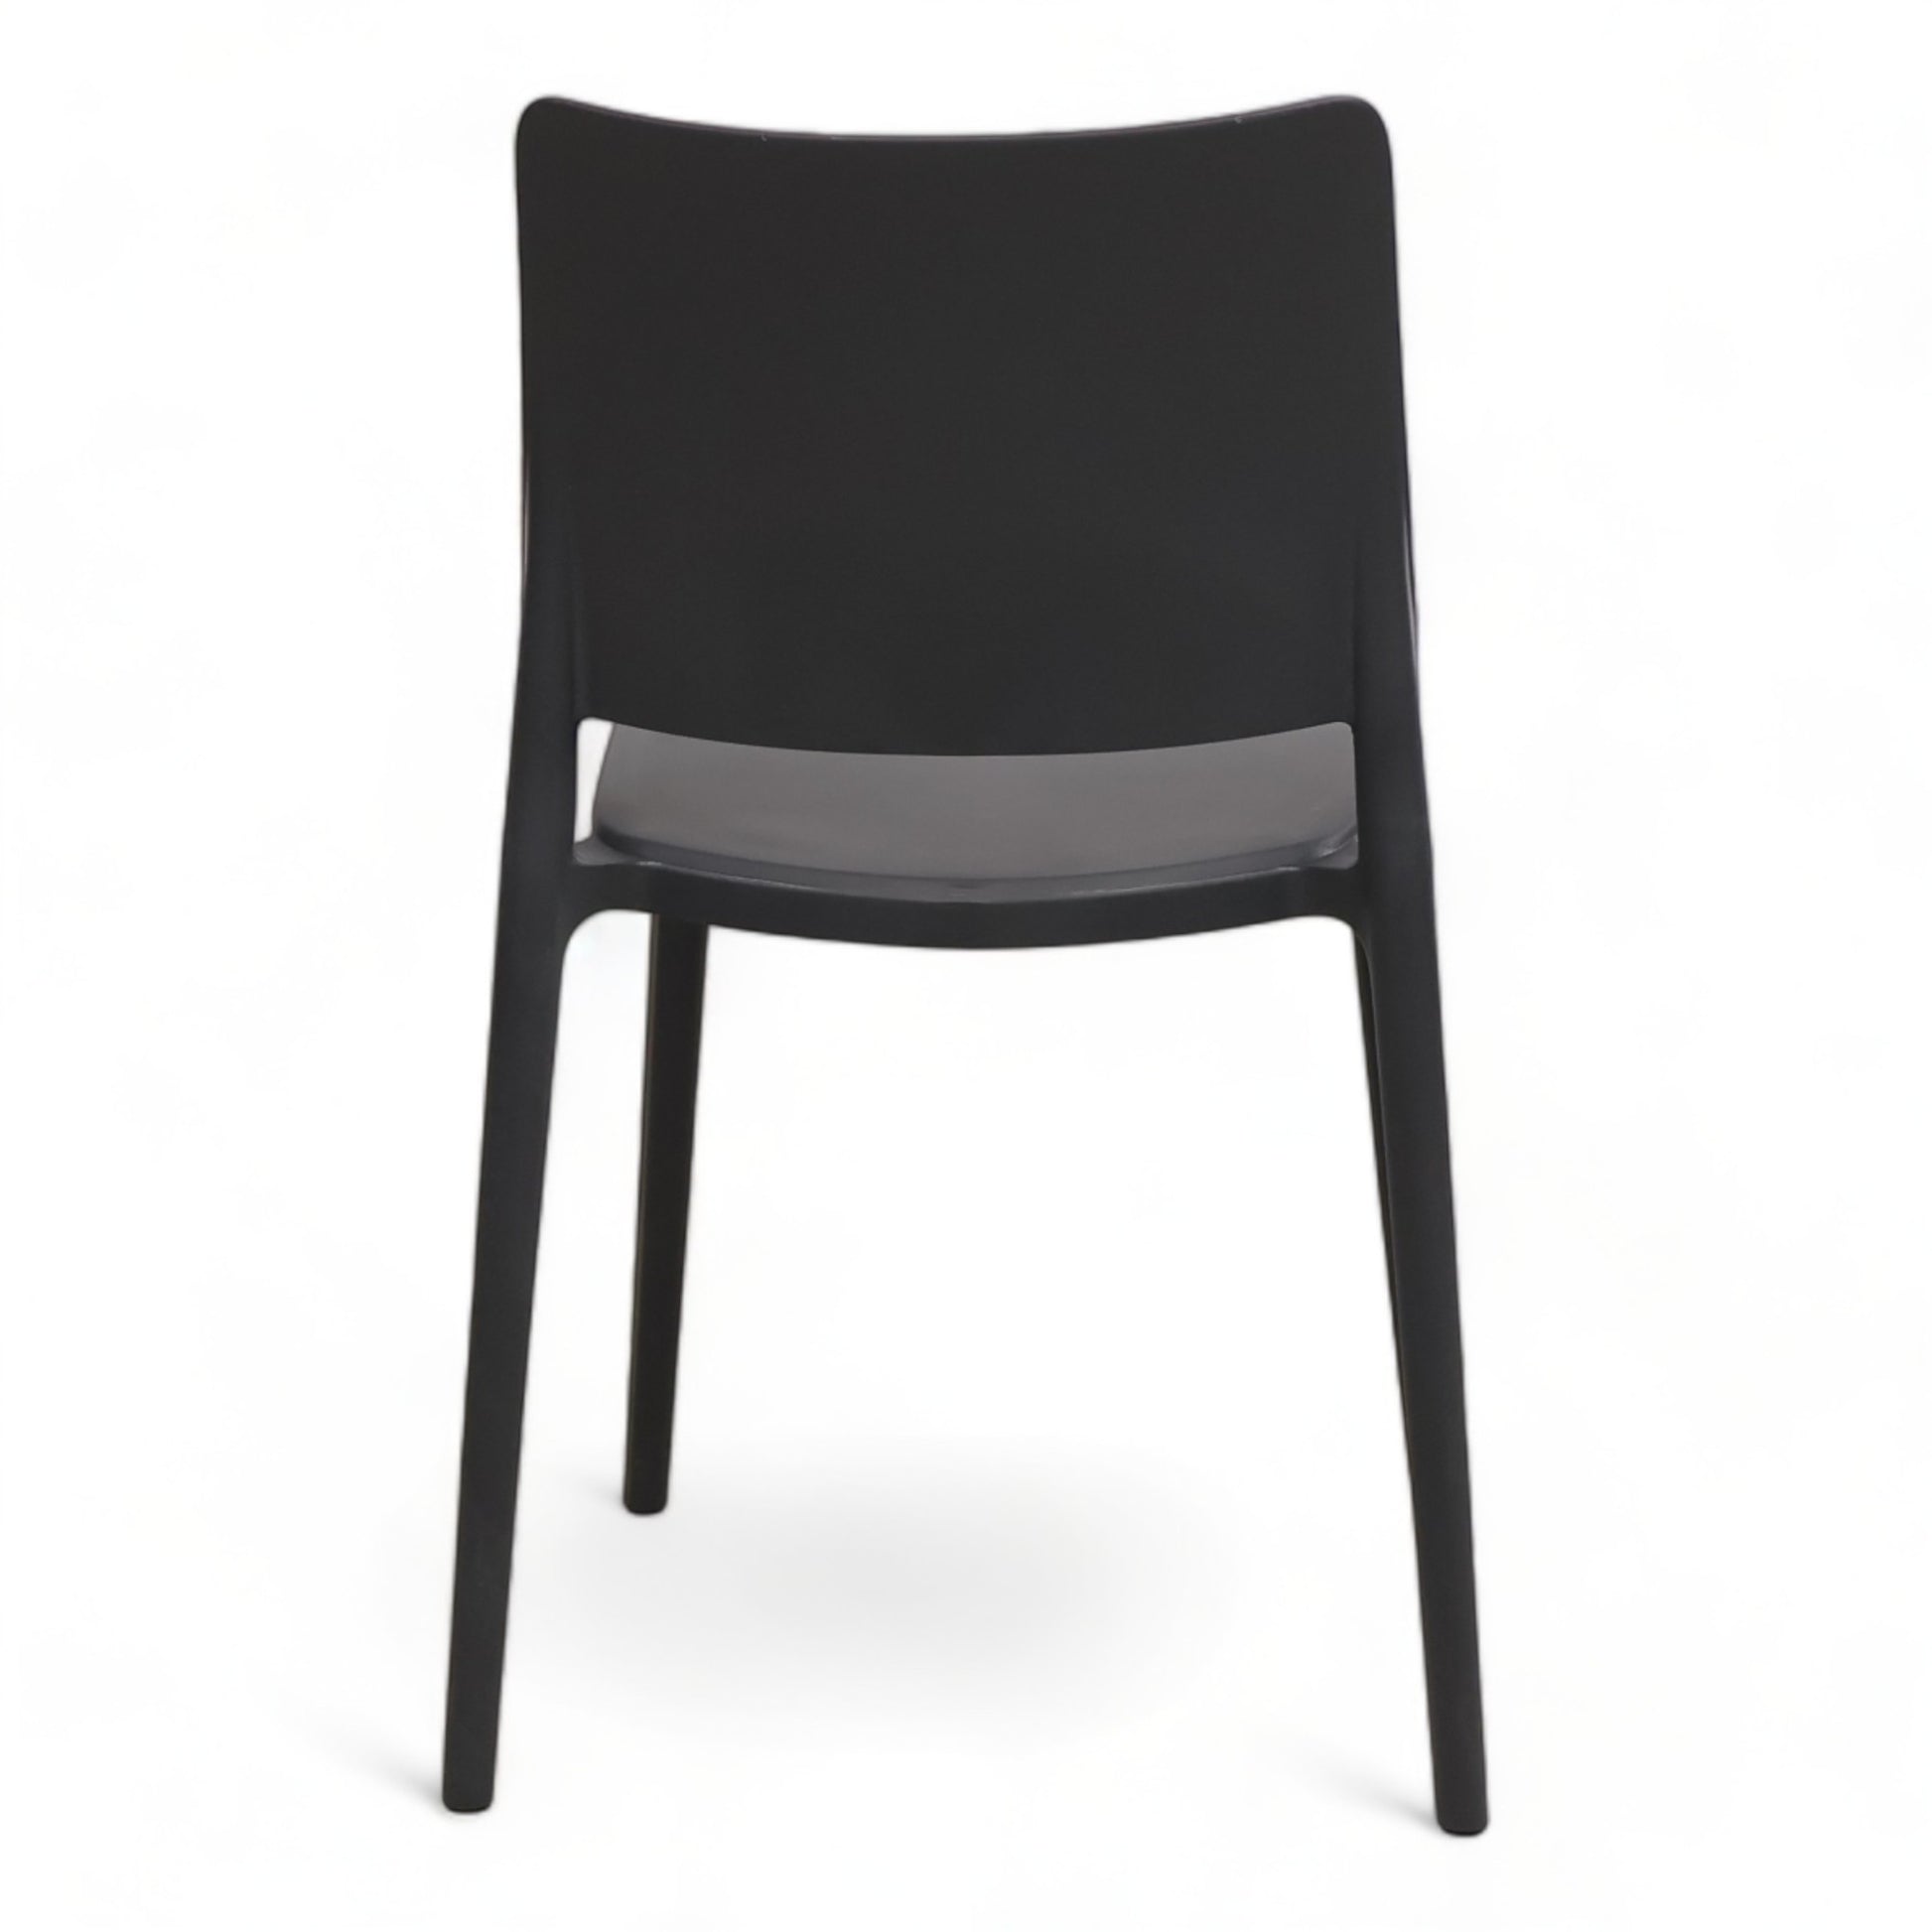 Nyrenset | Moderne spisestoler i mørk grå farge